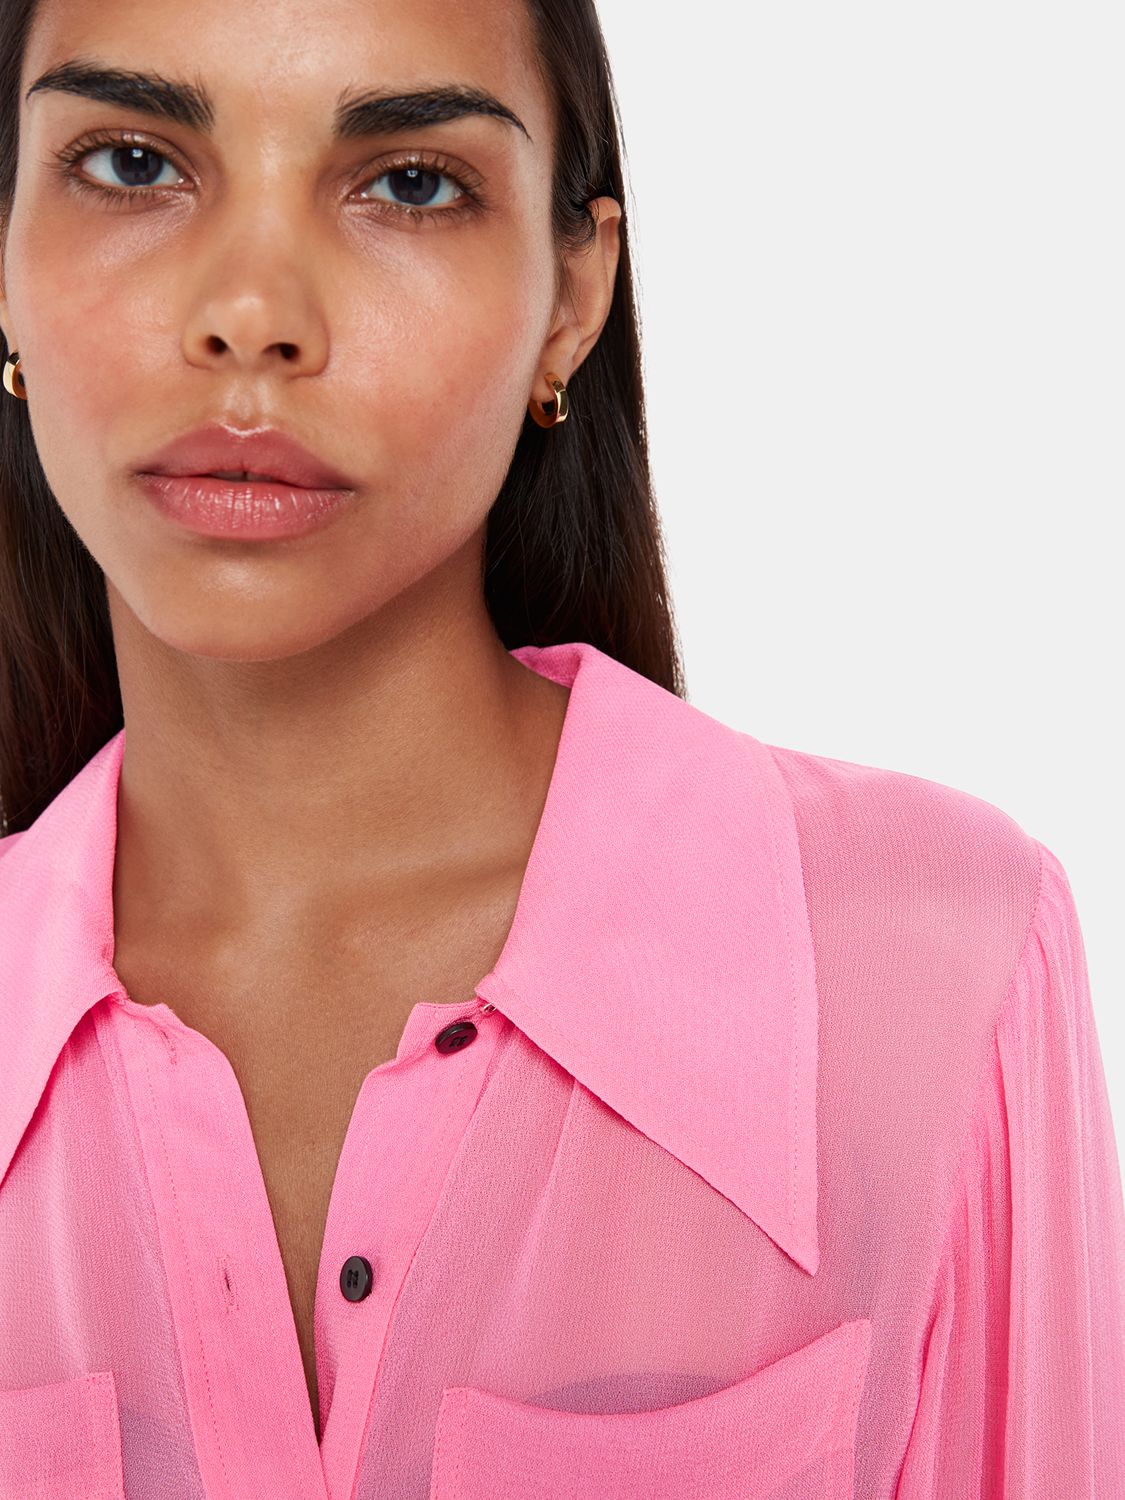 Whistles Penelope Long Sleeve Shirt, Pink at John Lewis & Partners